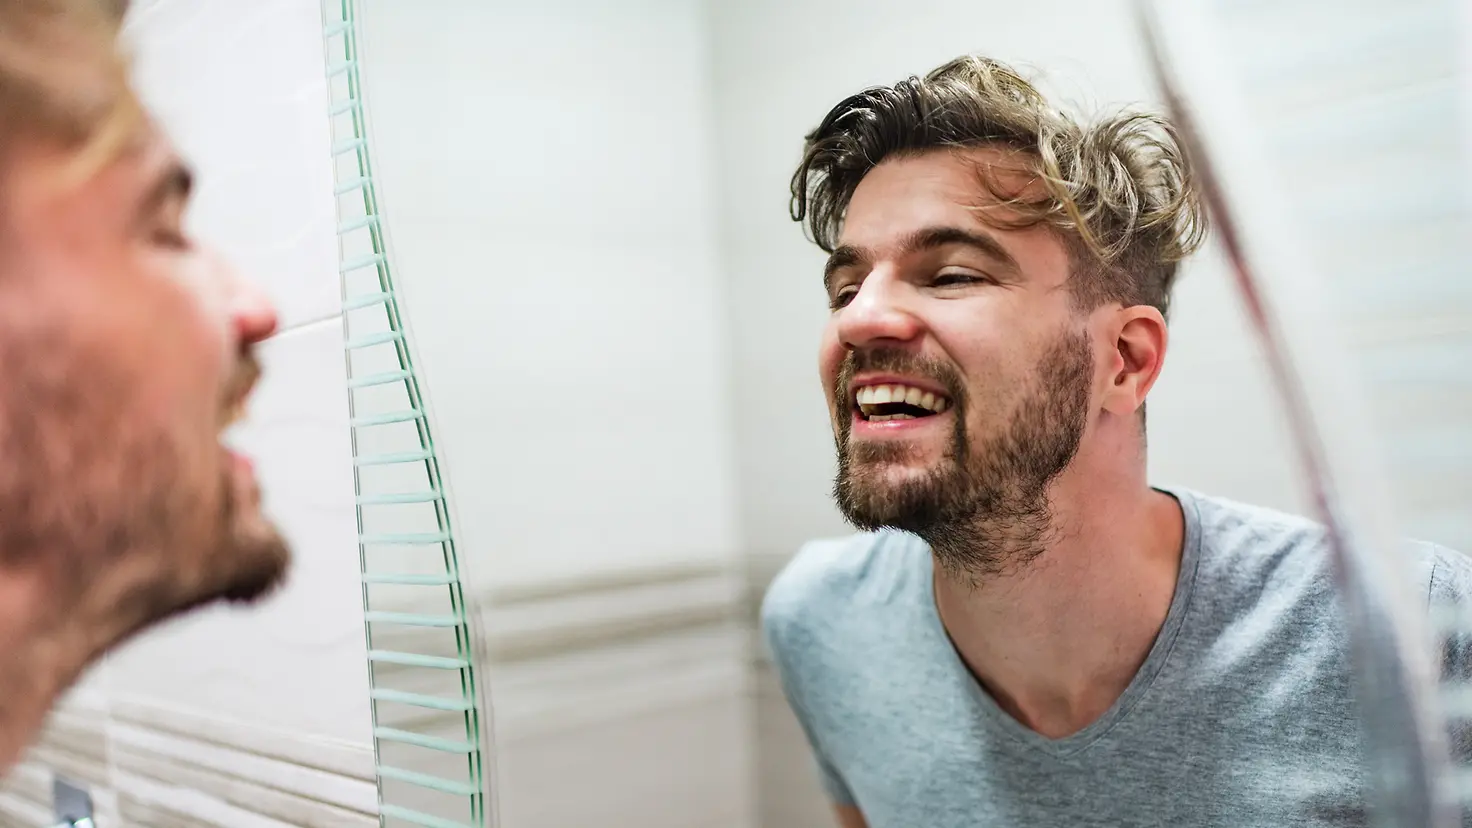 Ein Mann prüft seine Zähne im Spiegel auf Karies.